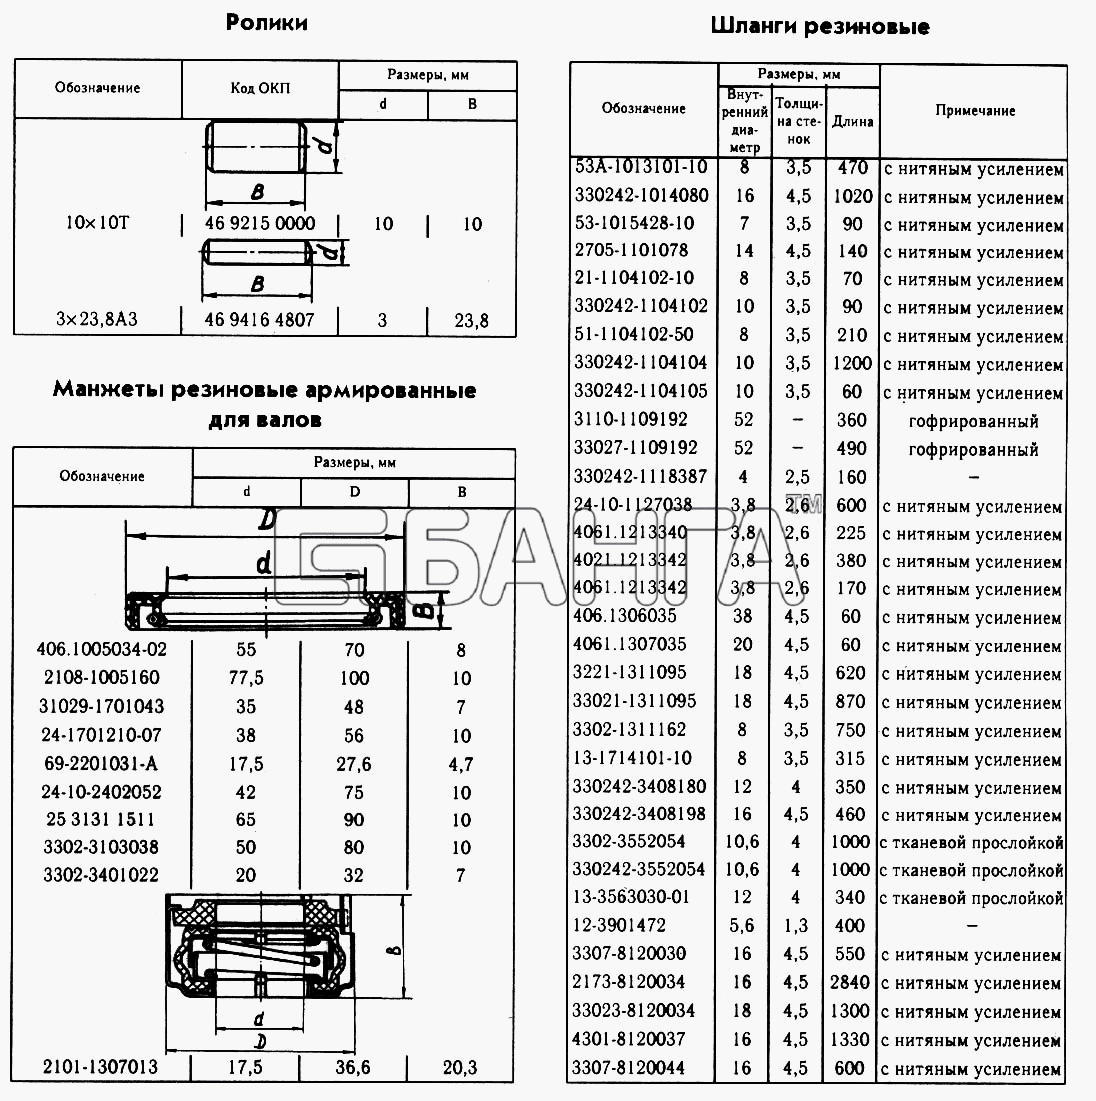 ГАЗ ГАЗ-2217 (Соболь) Схема Ролики Манжеты резиновые армированные для